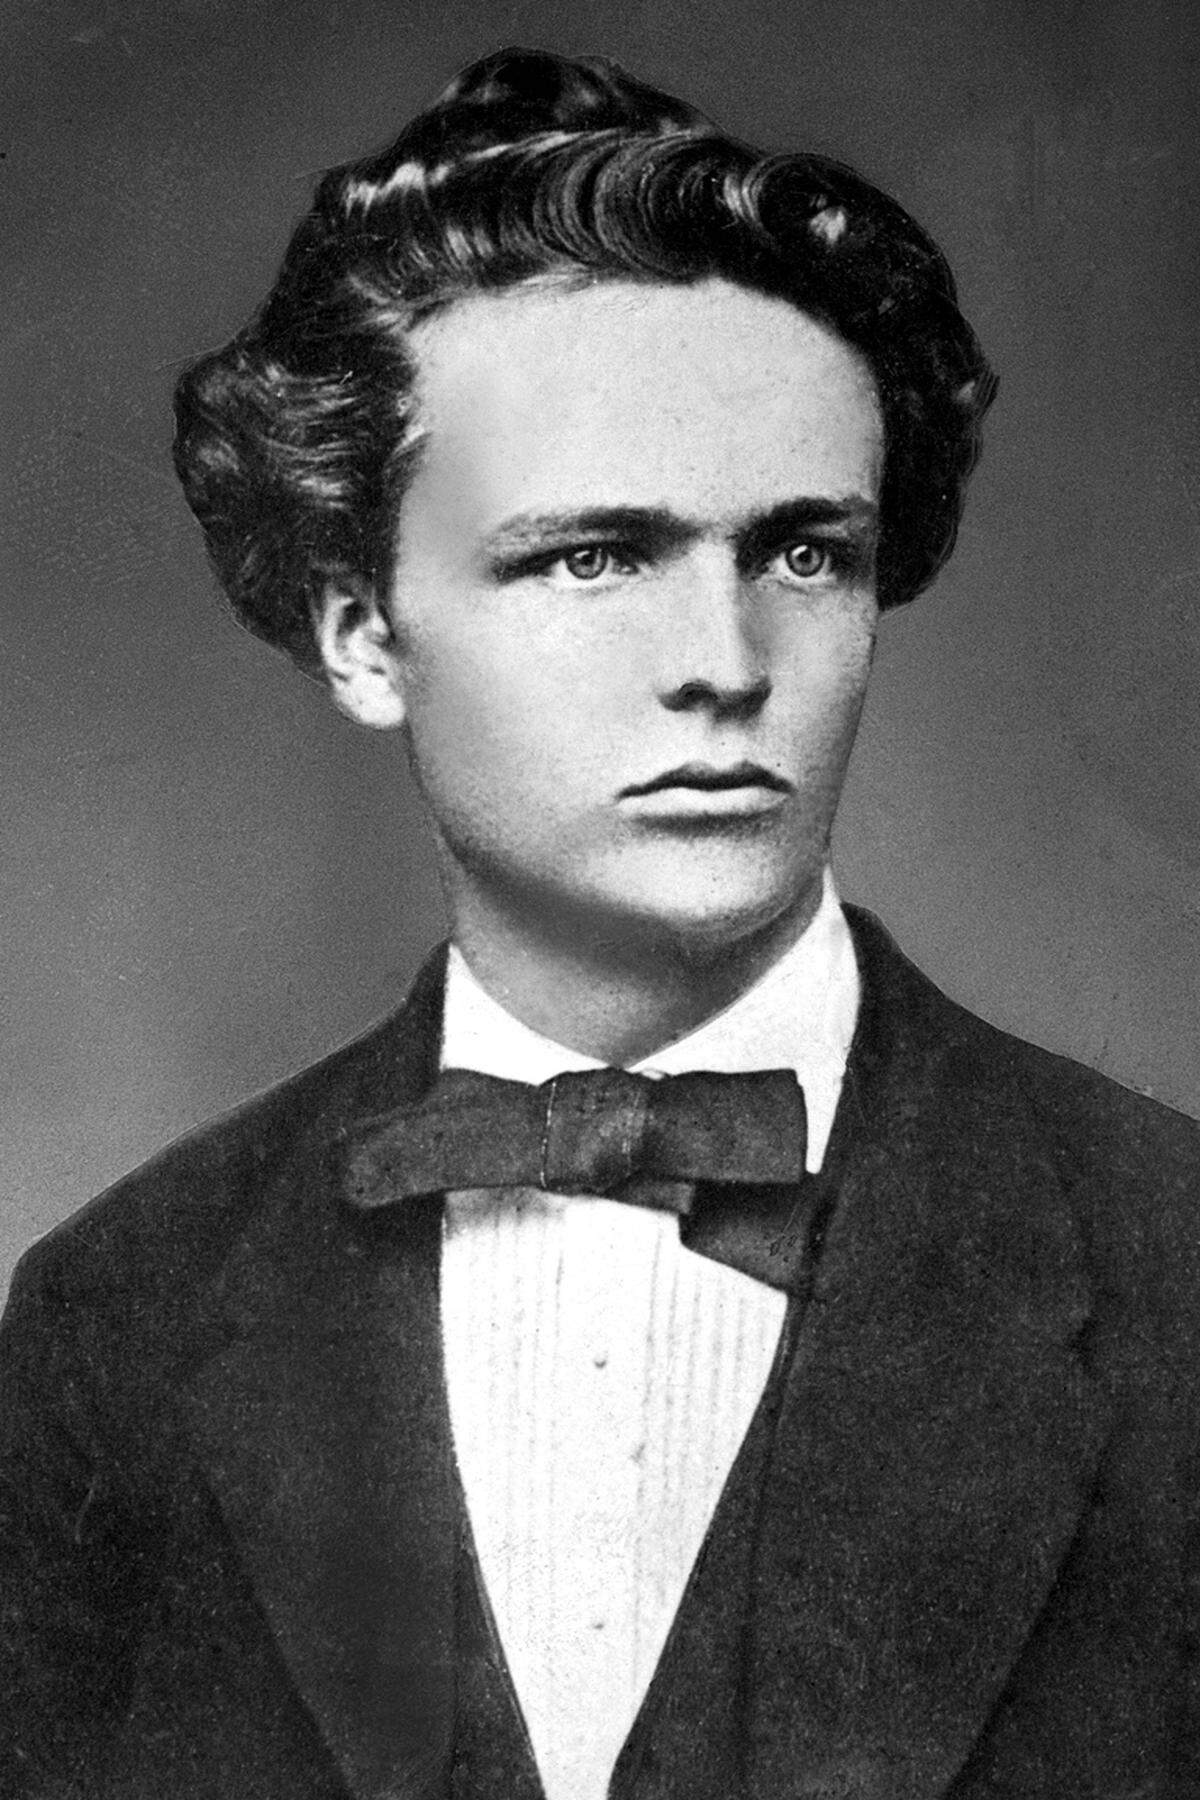 Auch der Schwede Strindberg dürfte mit seinen naturalistischen und expressionistischen Werken nicht dem Ideal der Jury entsprochen haben. Außerdem war er einmal wegen Gotteslästerung angeklagt worden und hat sich scheiden lassen.